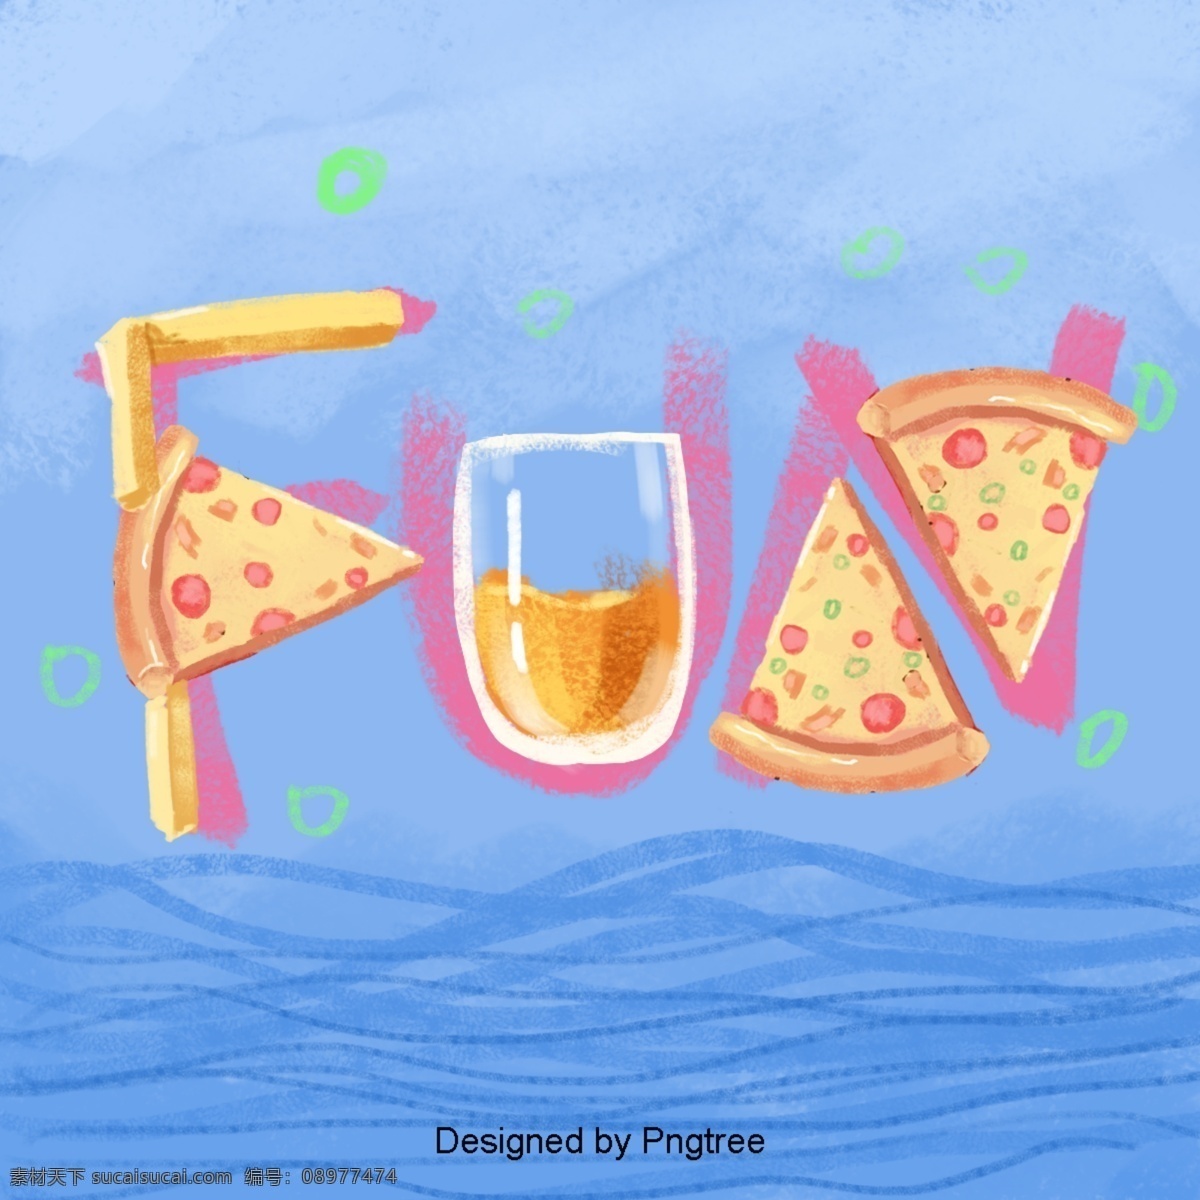 卡通 手绘 抽象 披萨 简单 美食 快餐 艺术设计 图案 图形